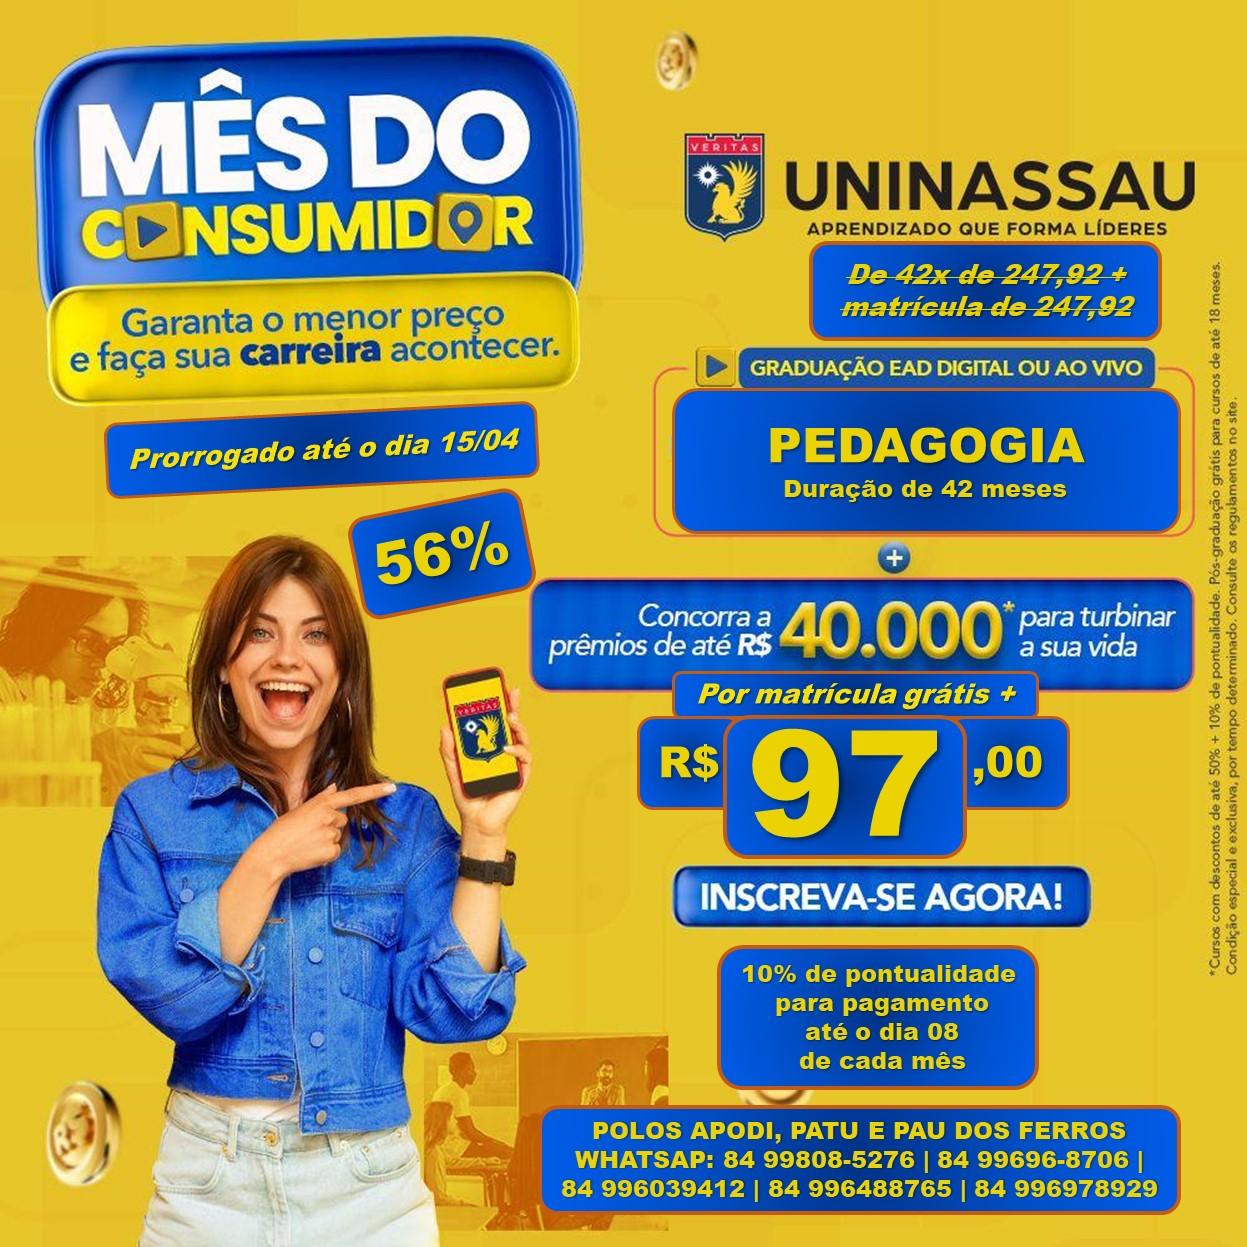 UNINASSAU prorroga promoção imperdível do mês do consumidor até 15 de abril